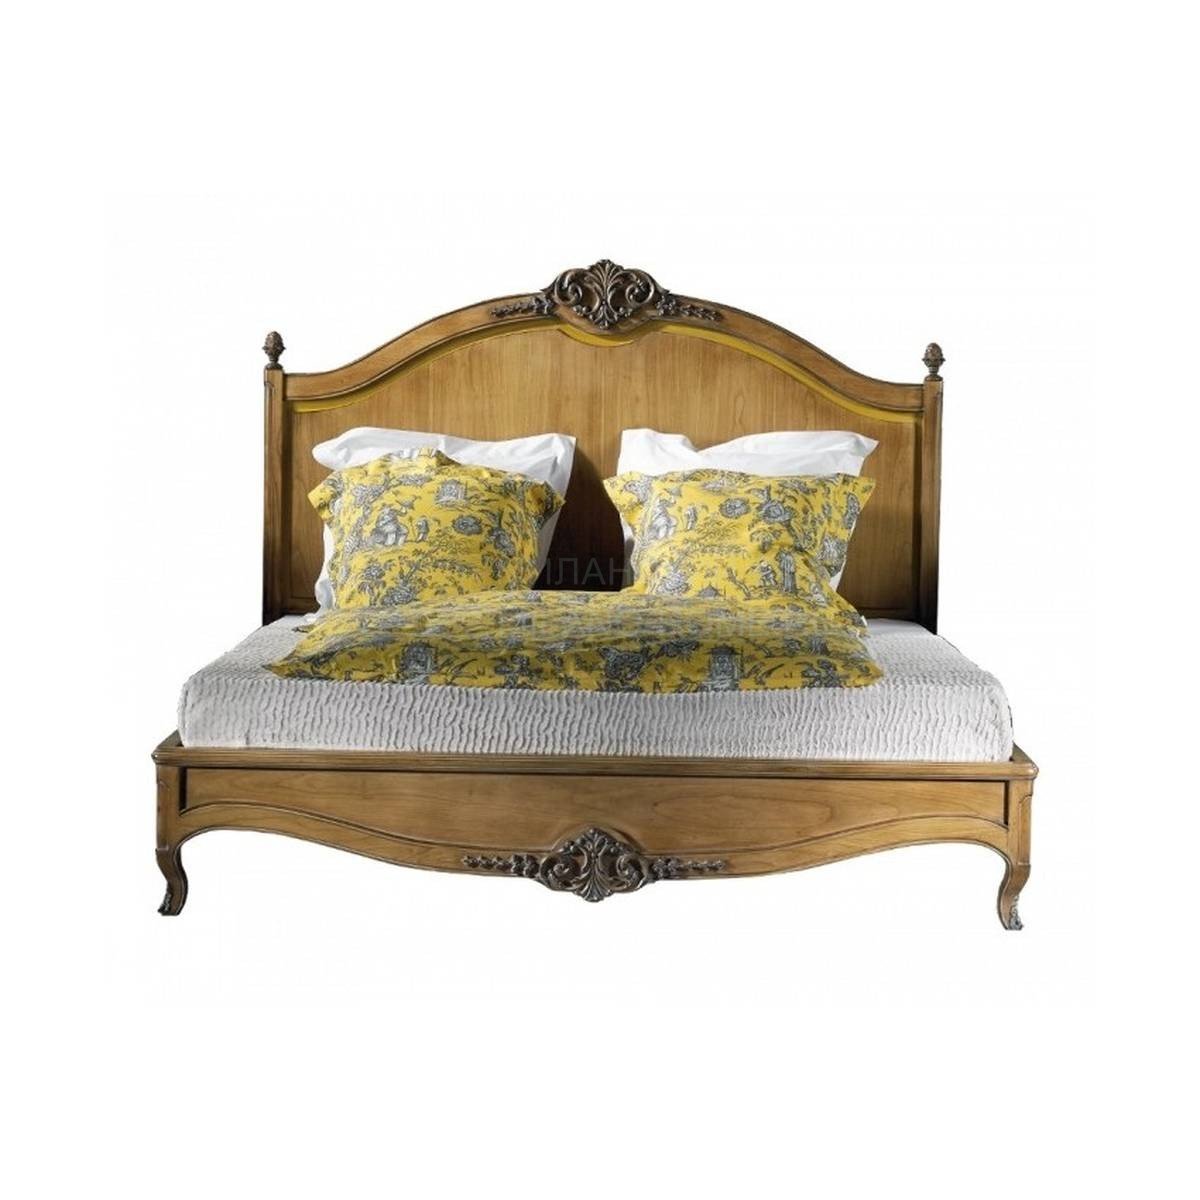 Кровать с деревянным изголовьем Louis XV/27010 из Франции фабрики LABARERE